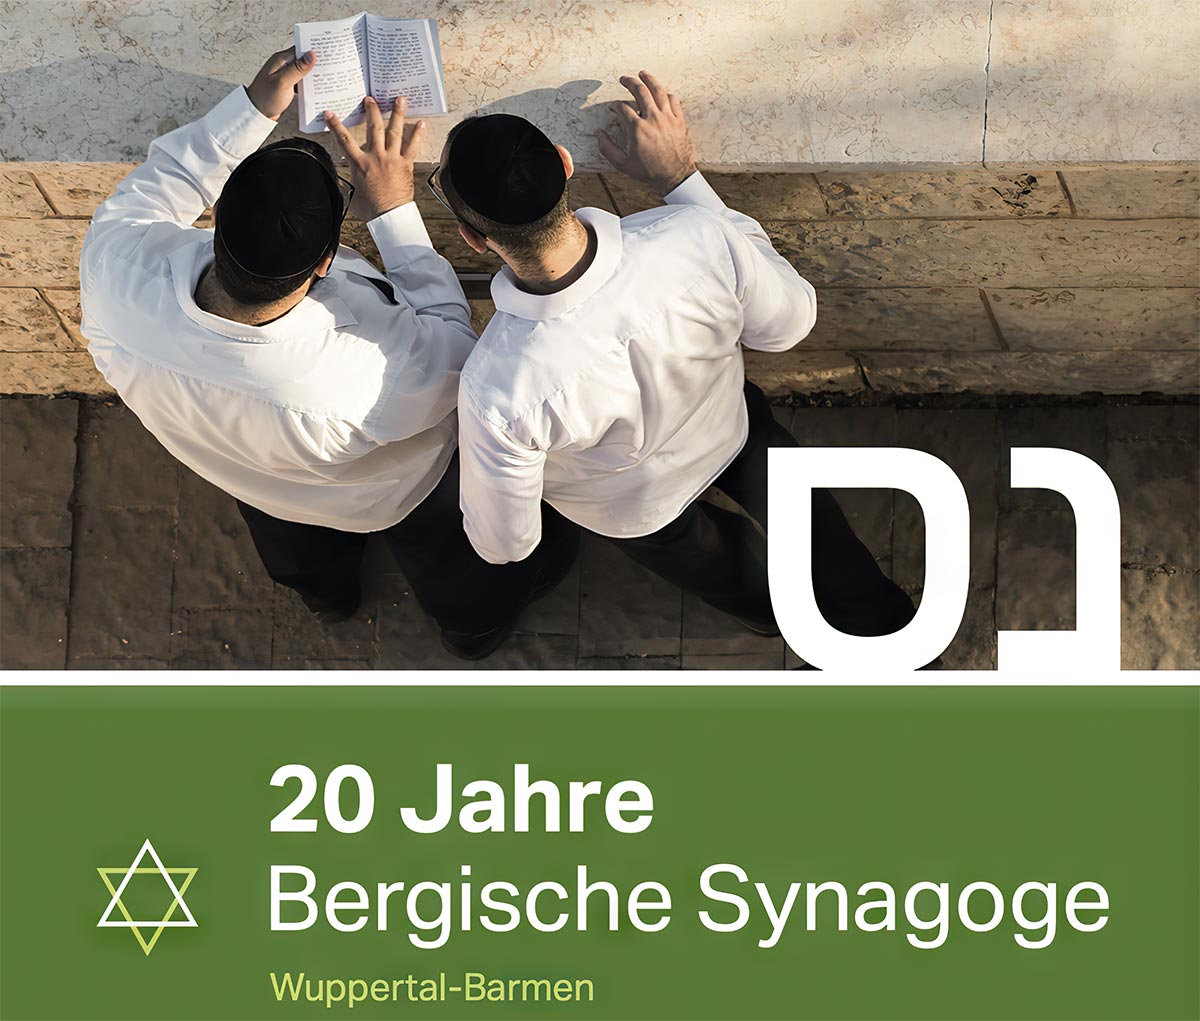 Konzertreihe zum zwanzigjährigen Bestehen der Bergischen Synagoge